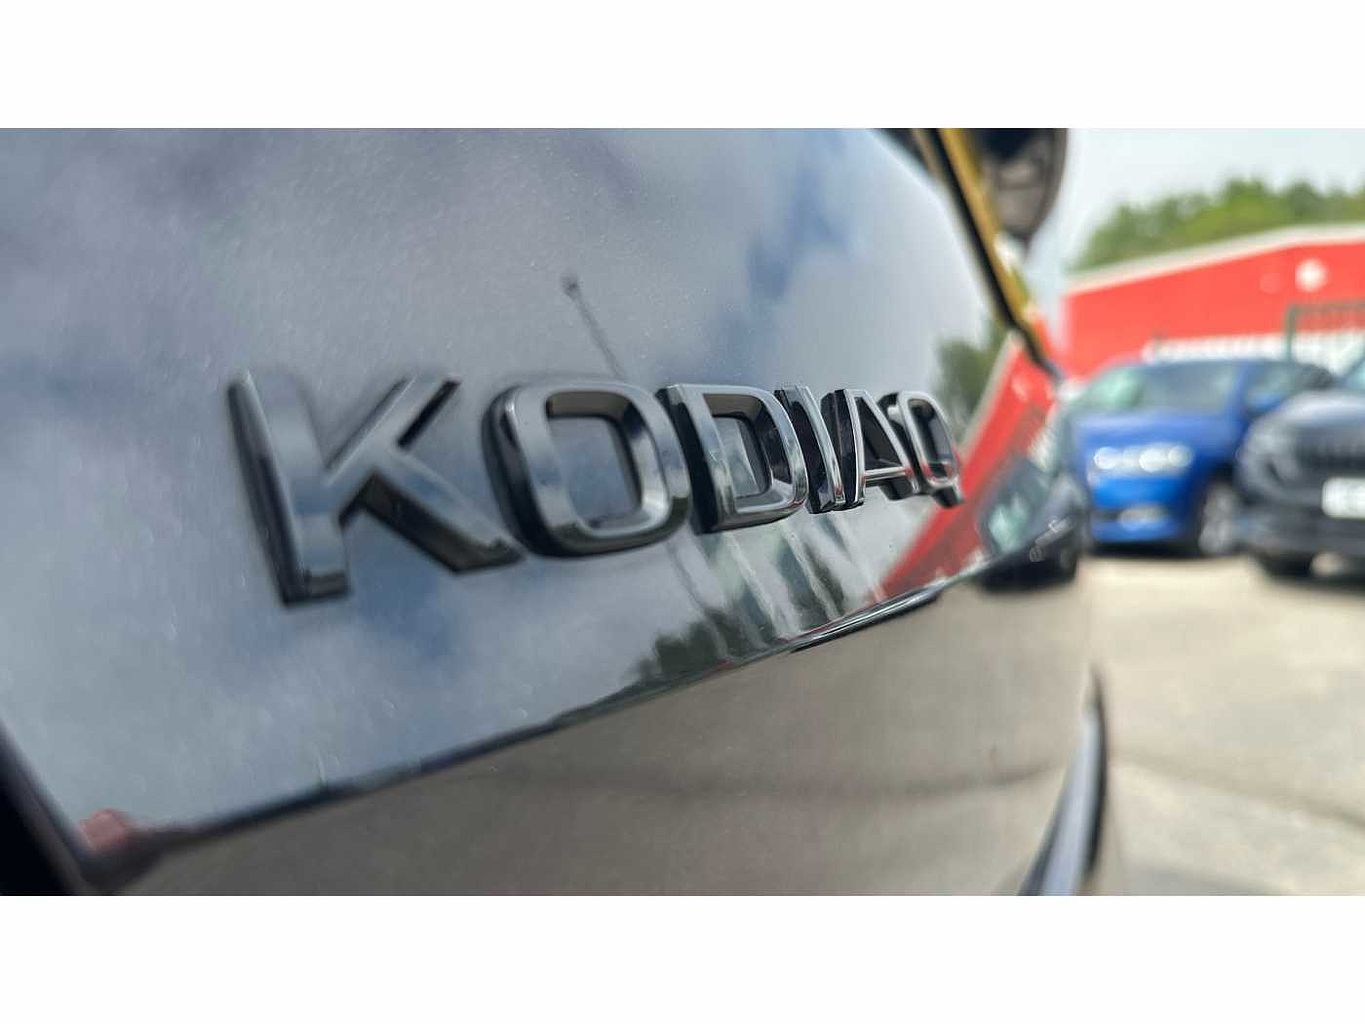 SKODA Kodiaq 1.5 TSI (150ps) Sportline (7 seats) ACT DSG